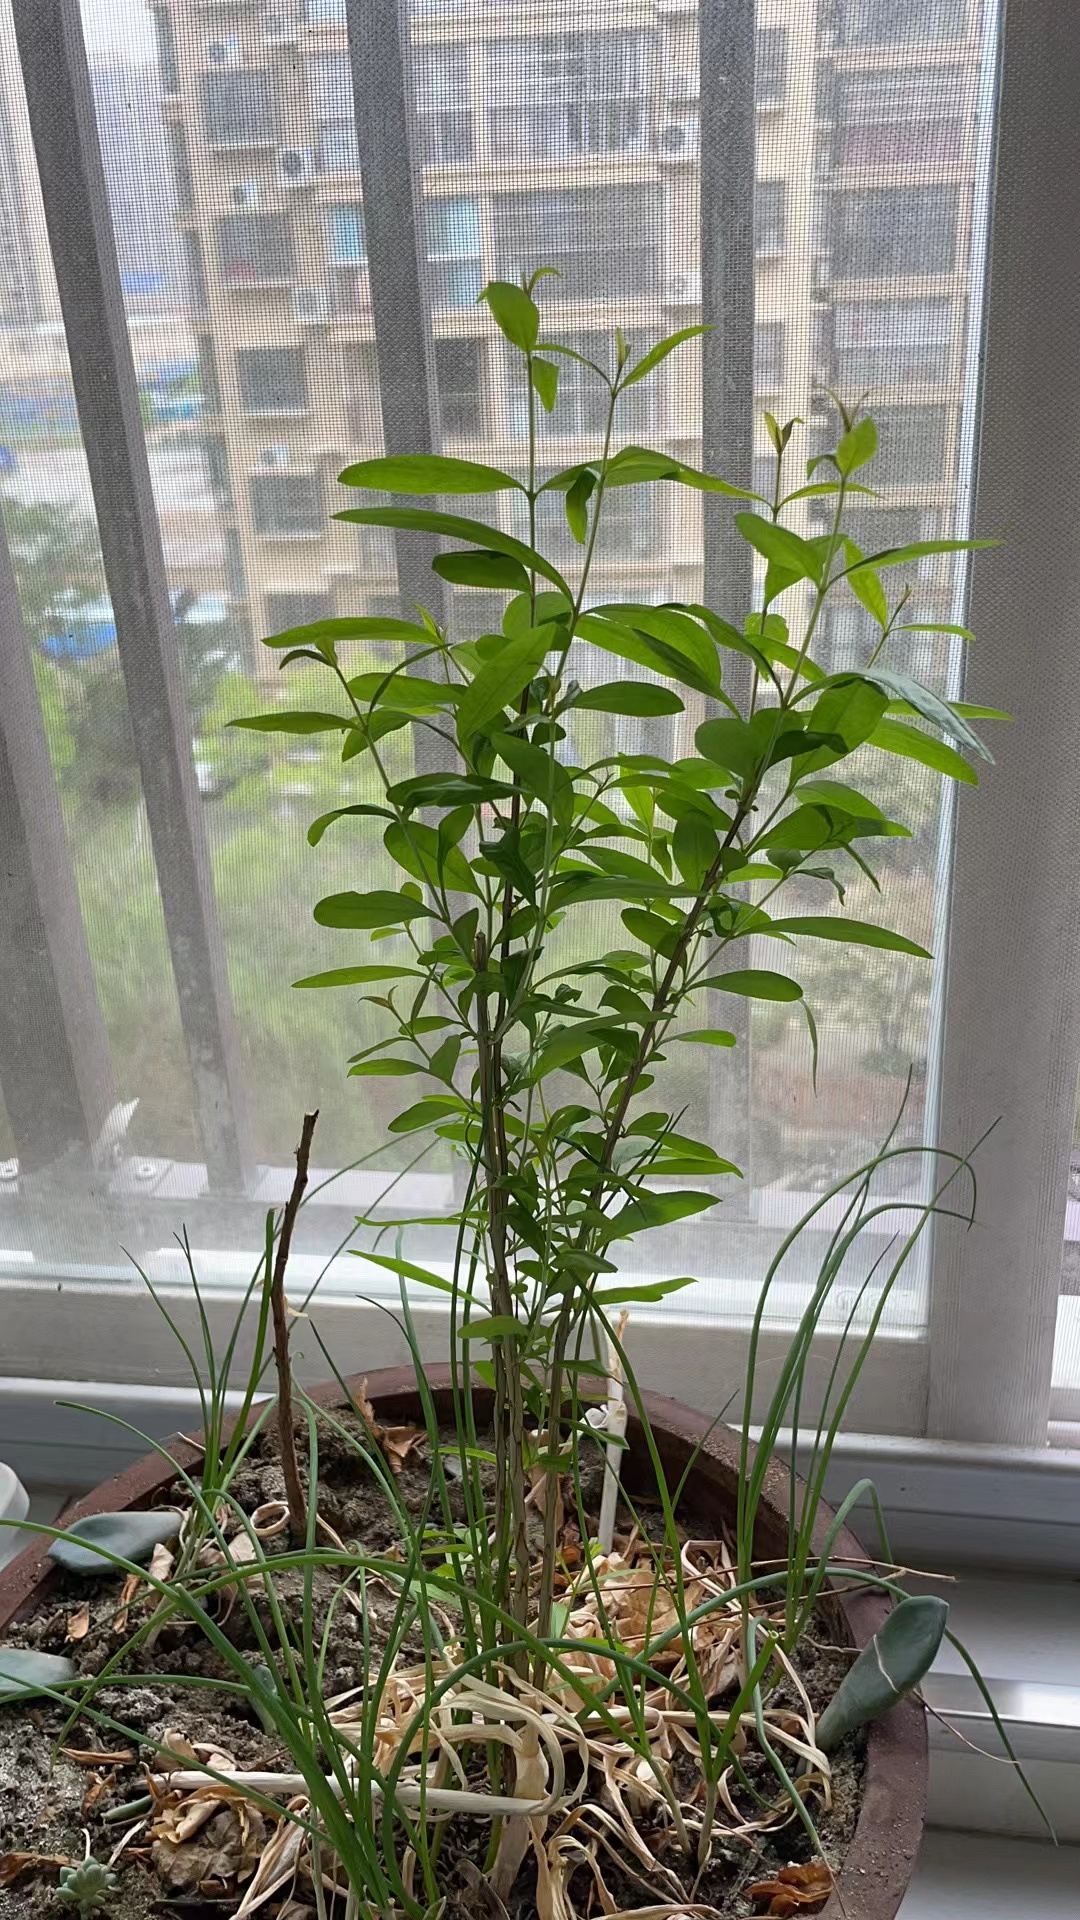 石榴树,有点意思,我前年吐的石榴籽,去年发芽,今年茂盛!